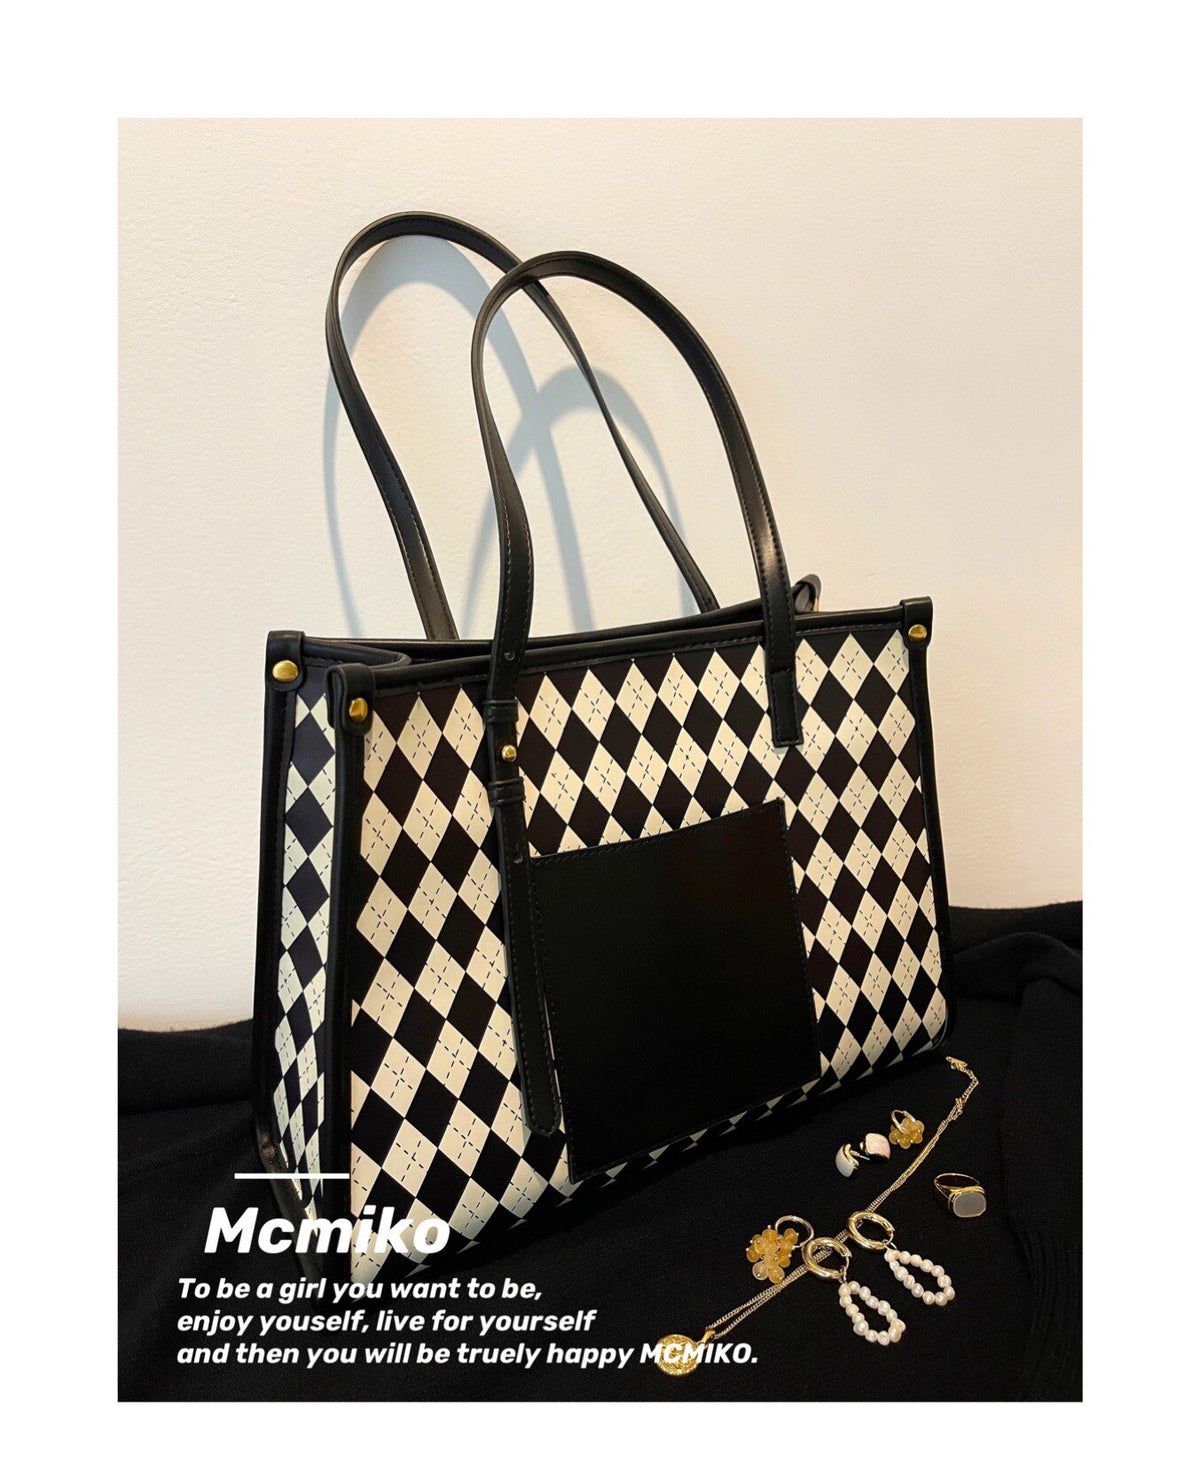 Women's Bag Vintage High Fashion Black Lingge Tote Bag commuter large capacity Handbag Shopping Shoulder Bag